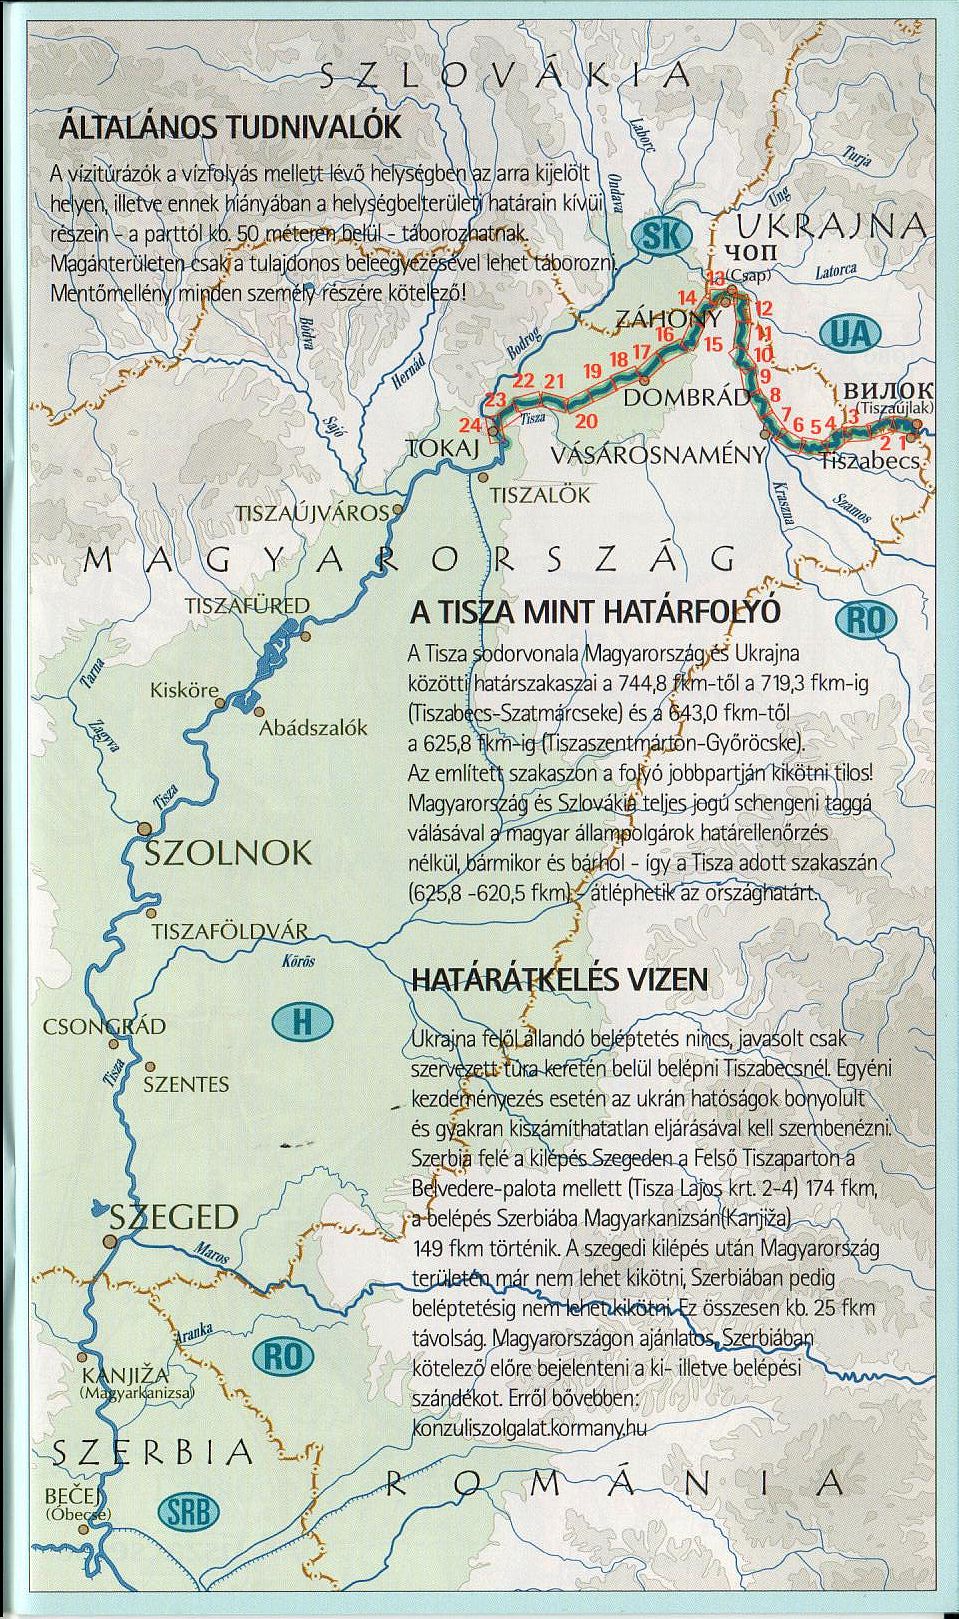 Tisza 745-537 (Tiszabecs-Tokaj): overviewv map